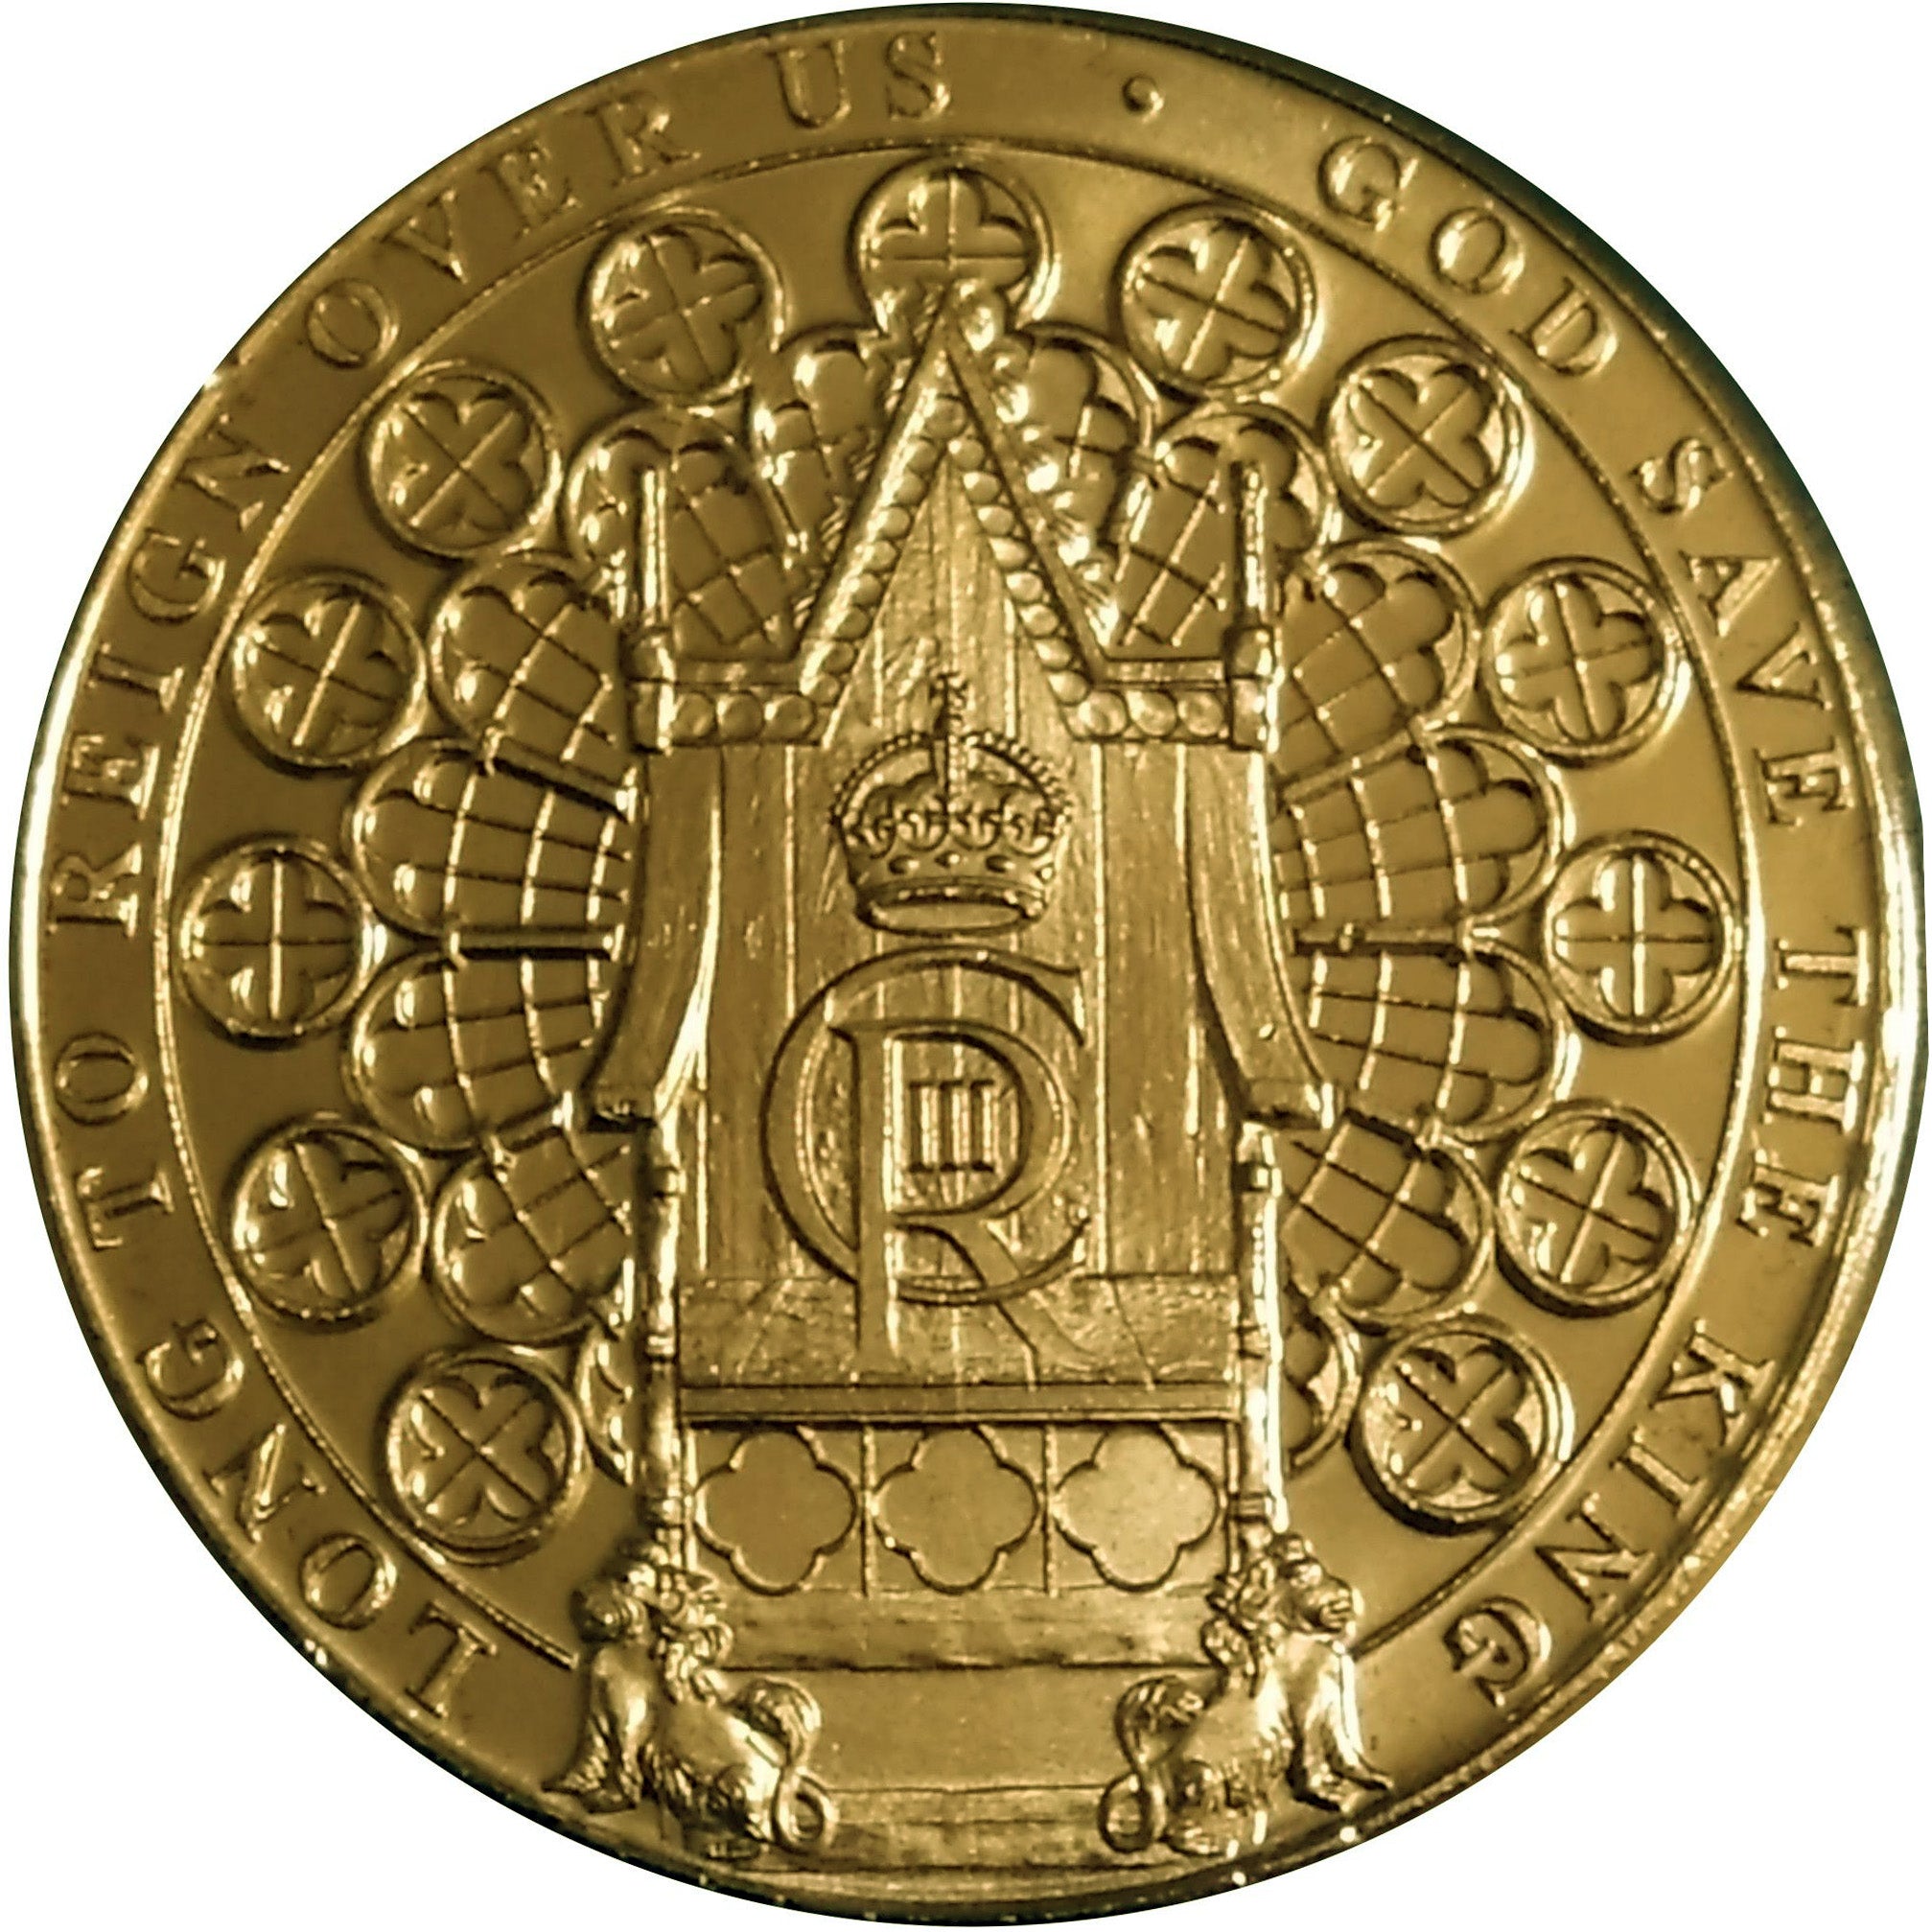 1 libra GIBRALTAR 2023 - Coronación Carlos III (RARA)